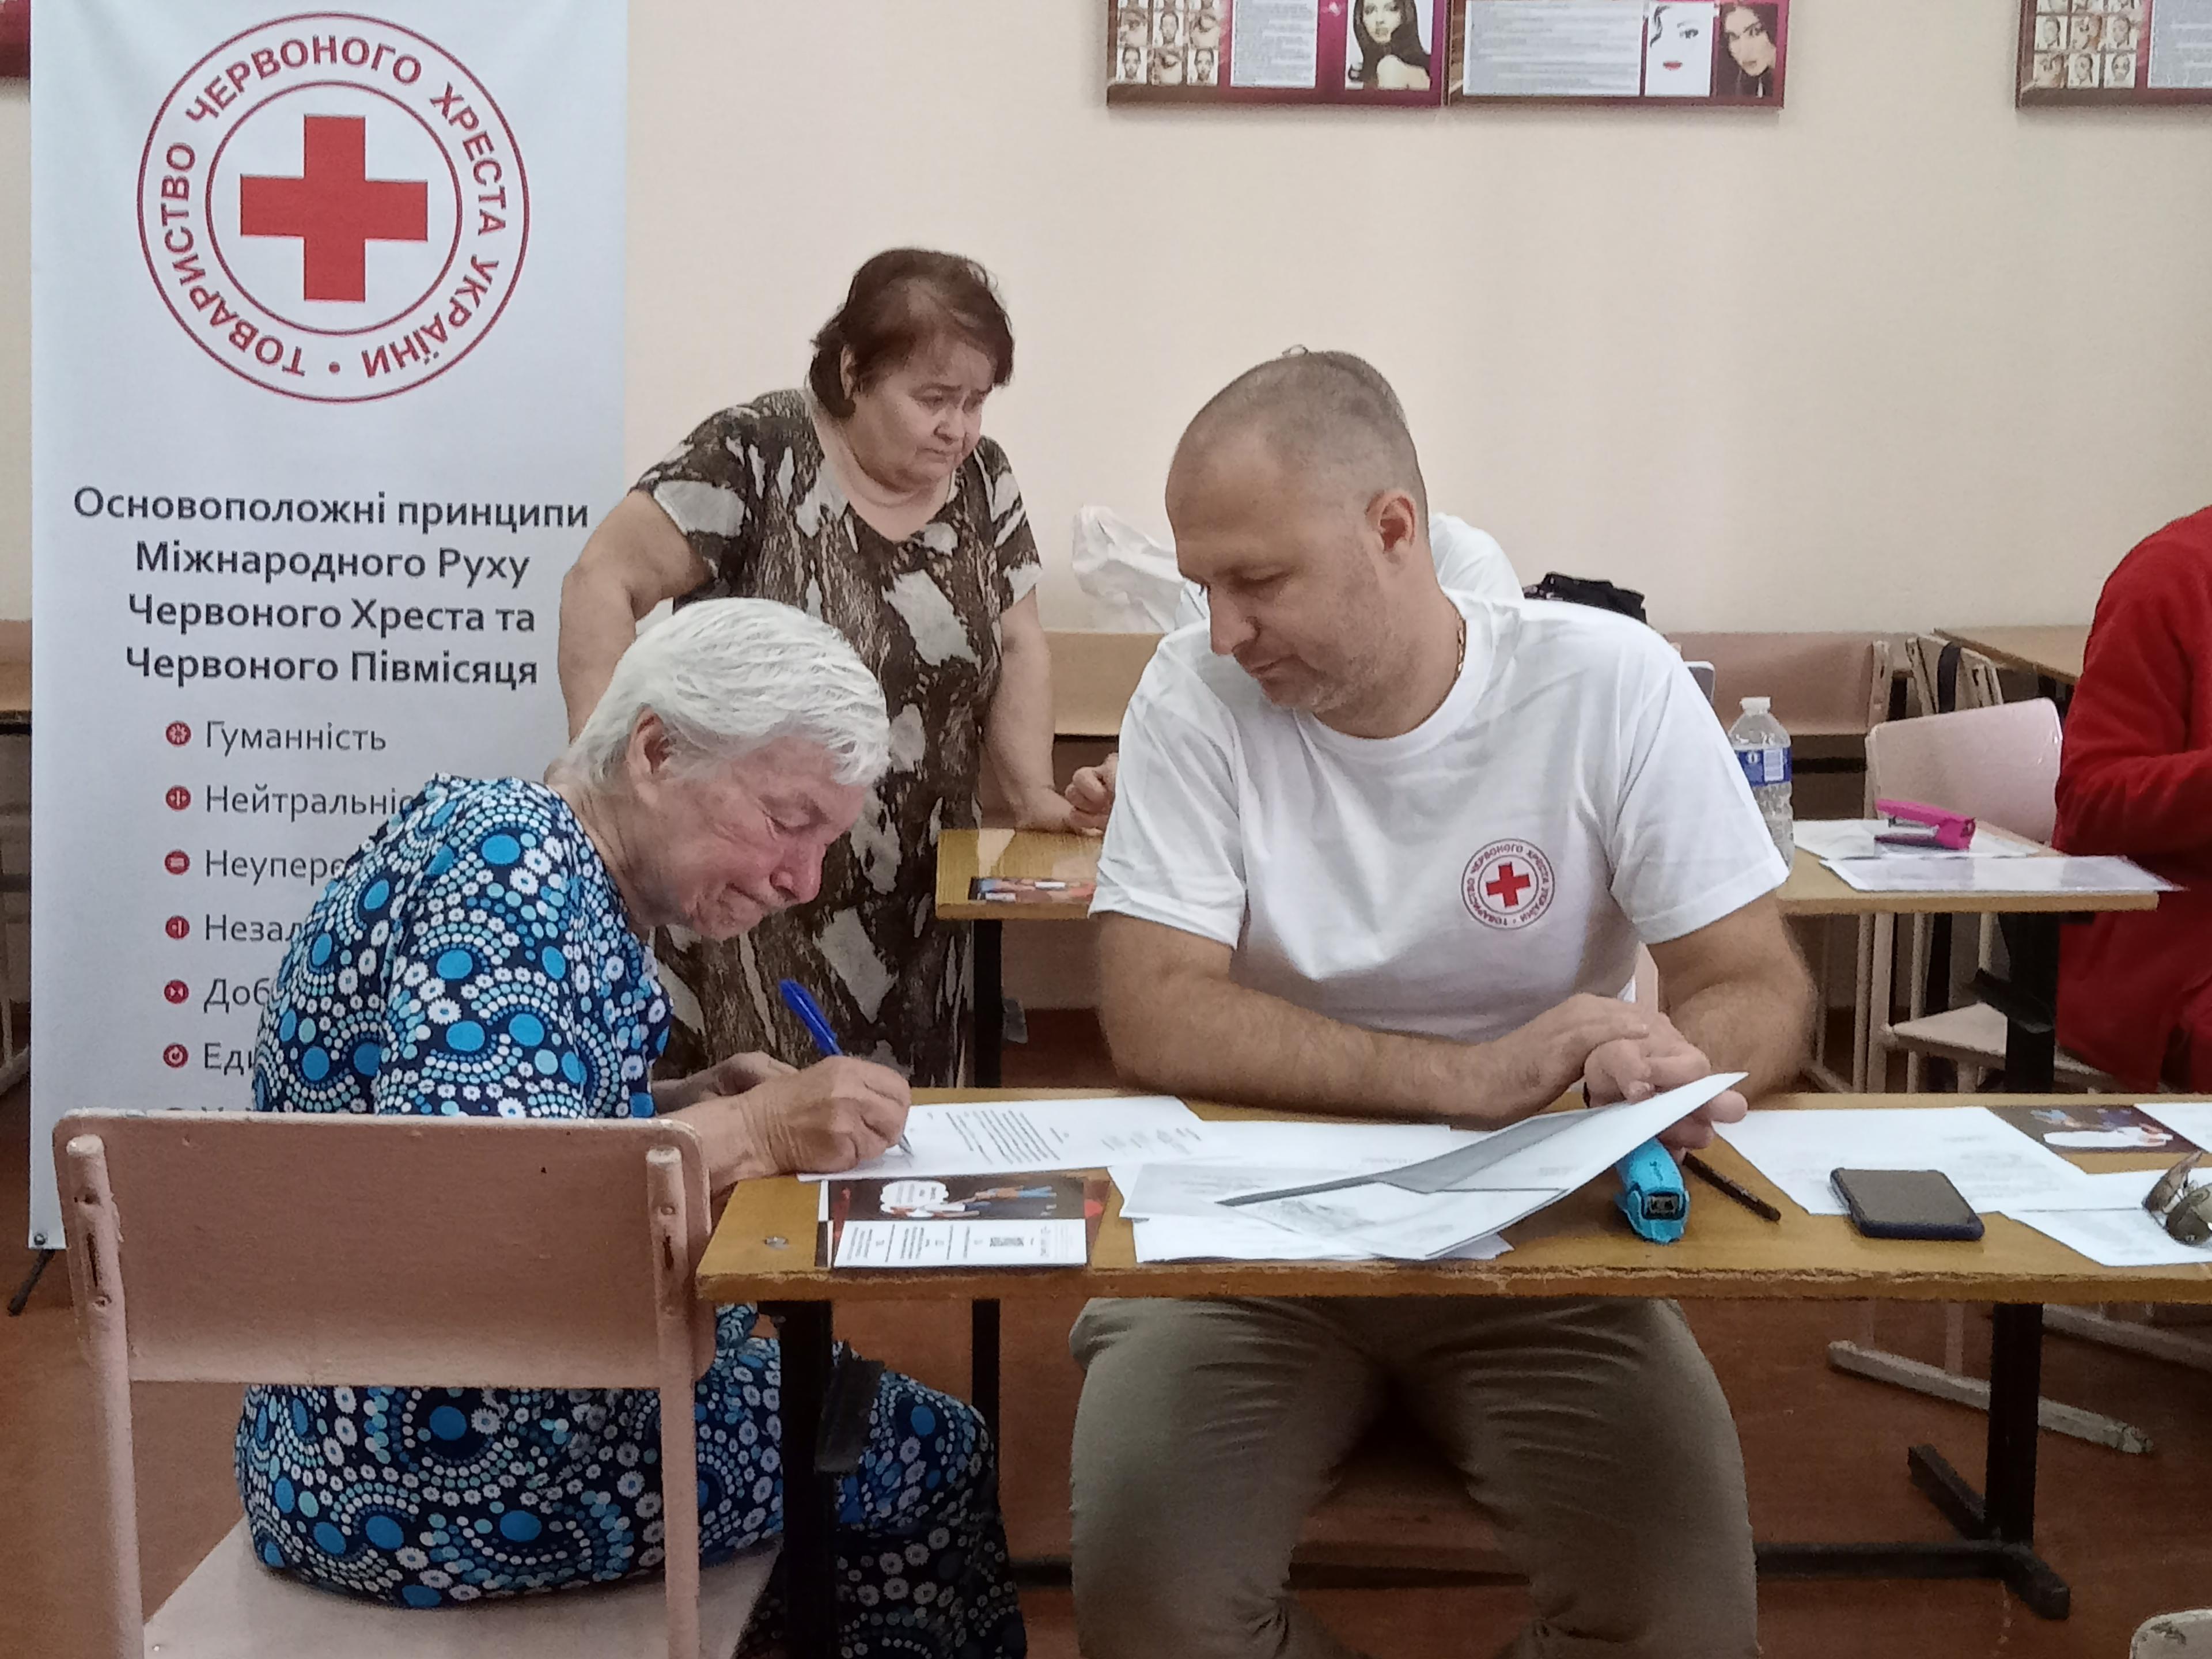 Una donna anziana compila dei moduli seduta a un tavolo. Di fianco a lei c’è un uomo con una maglietta della Croce Rossa con in mano alcuni fogli. L’uomo la sta probabilmente aiutando a compilare i documenti.